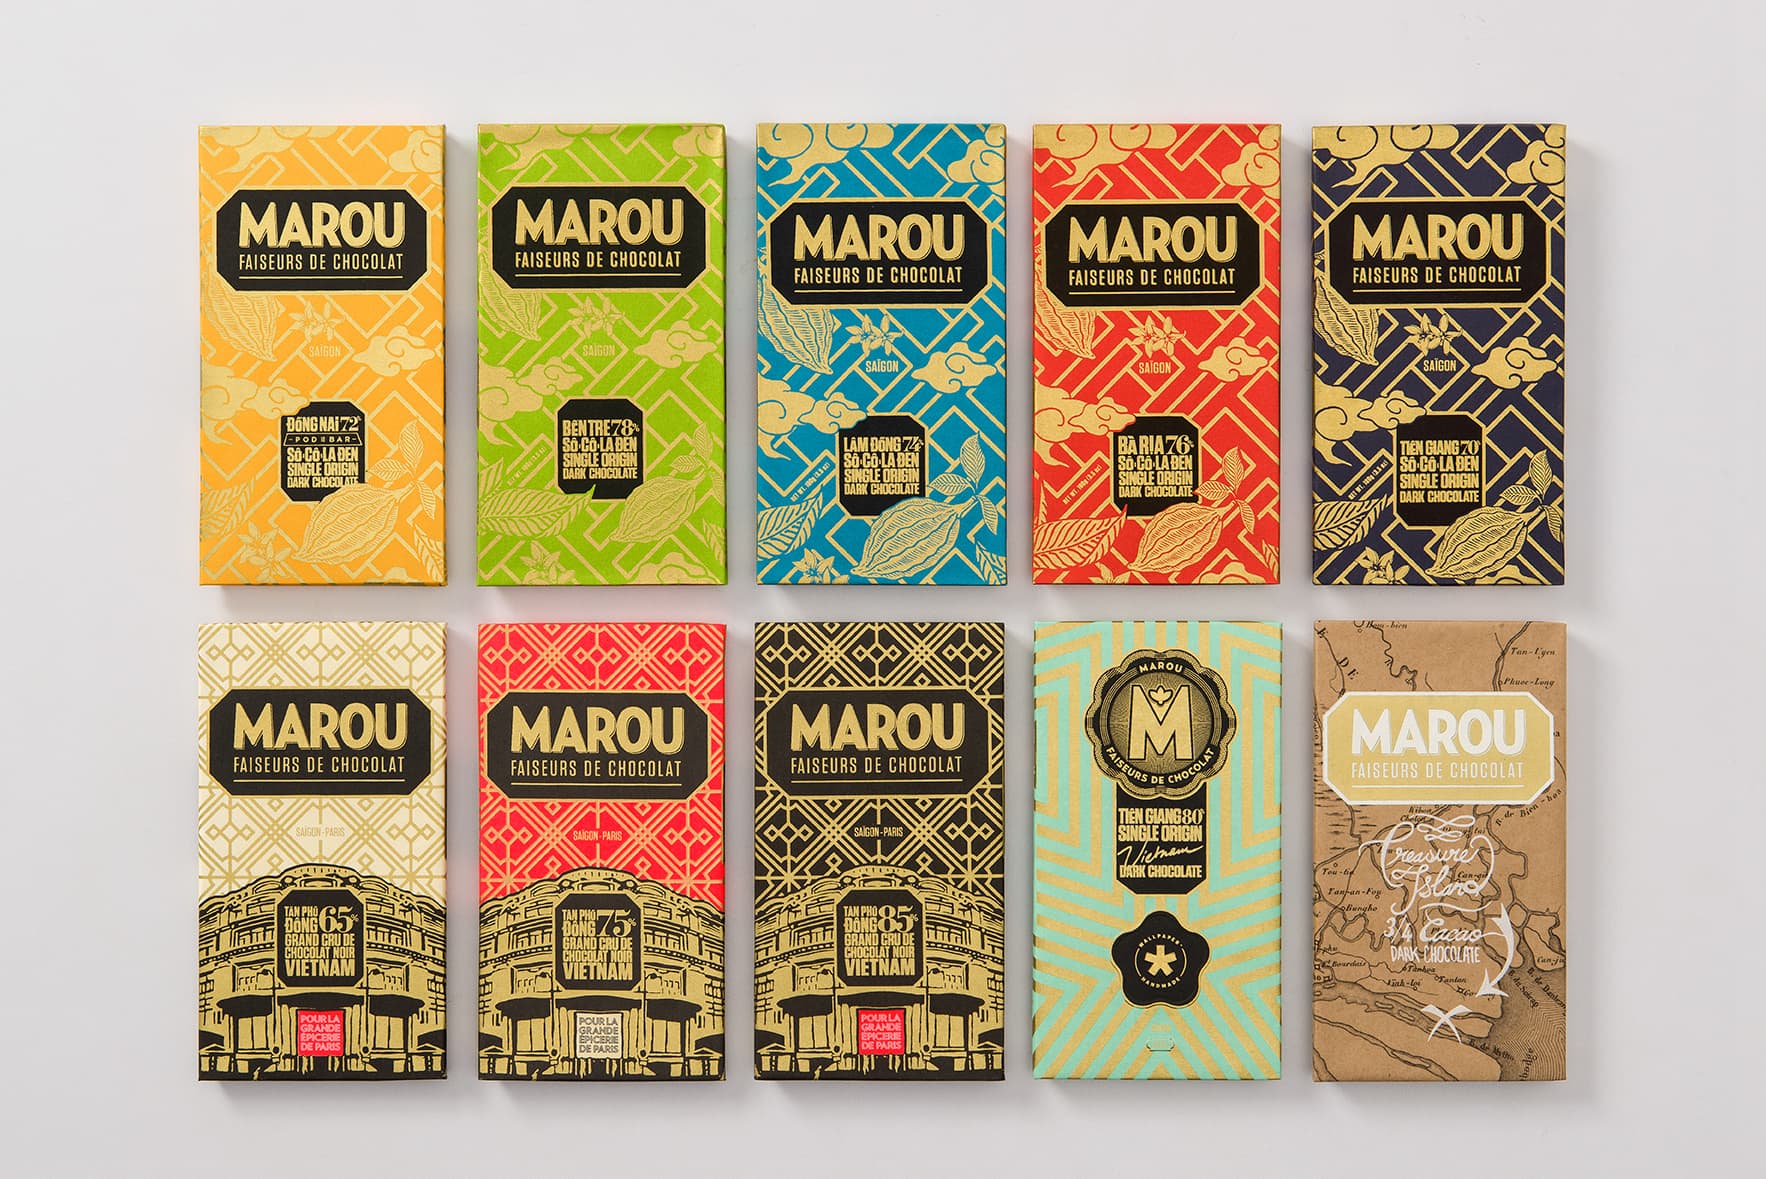 Marou - Origin of making dark chocolate entirely from Vietnam's finest  ingredients